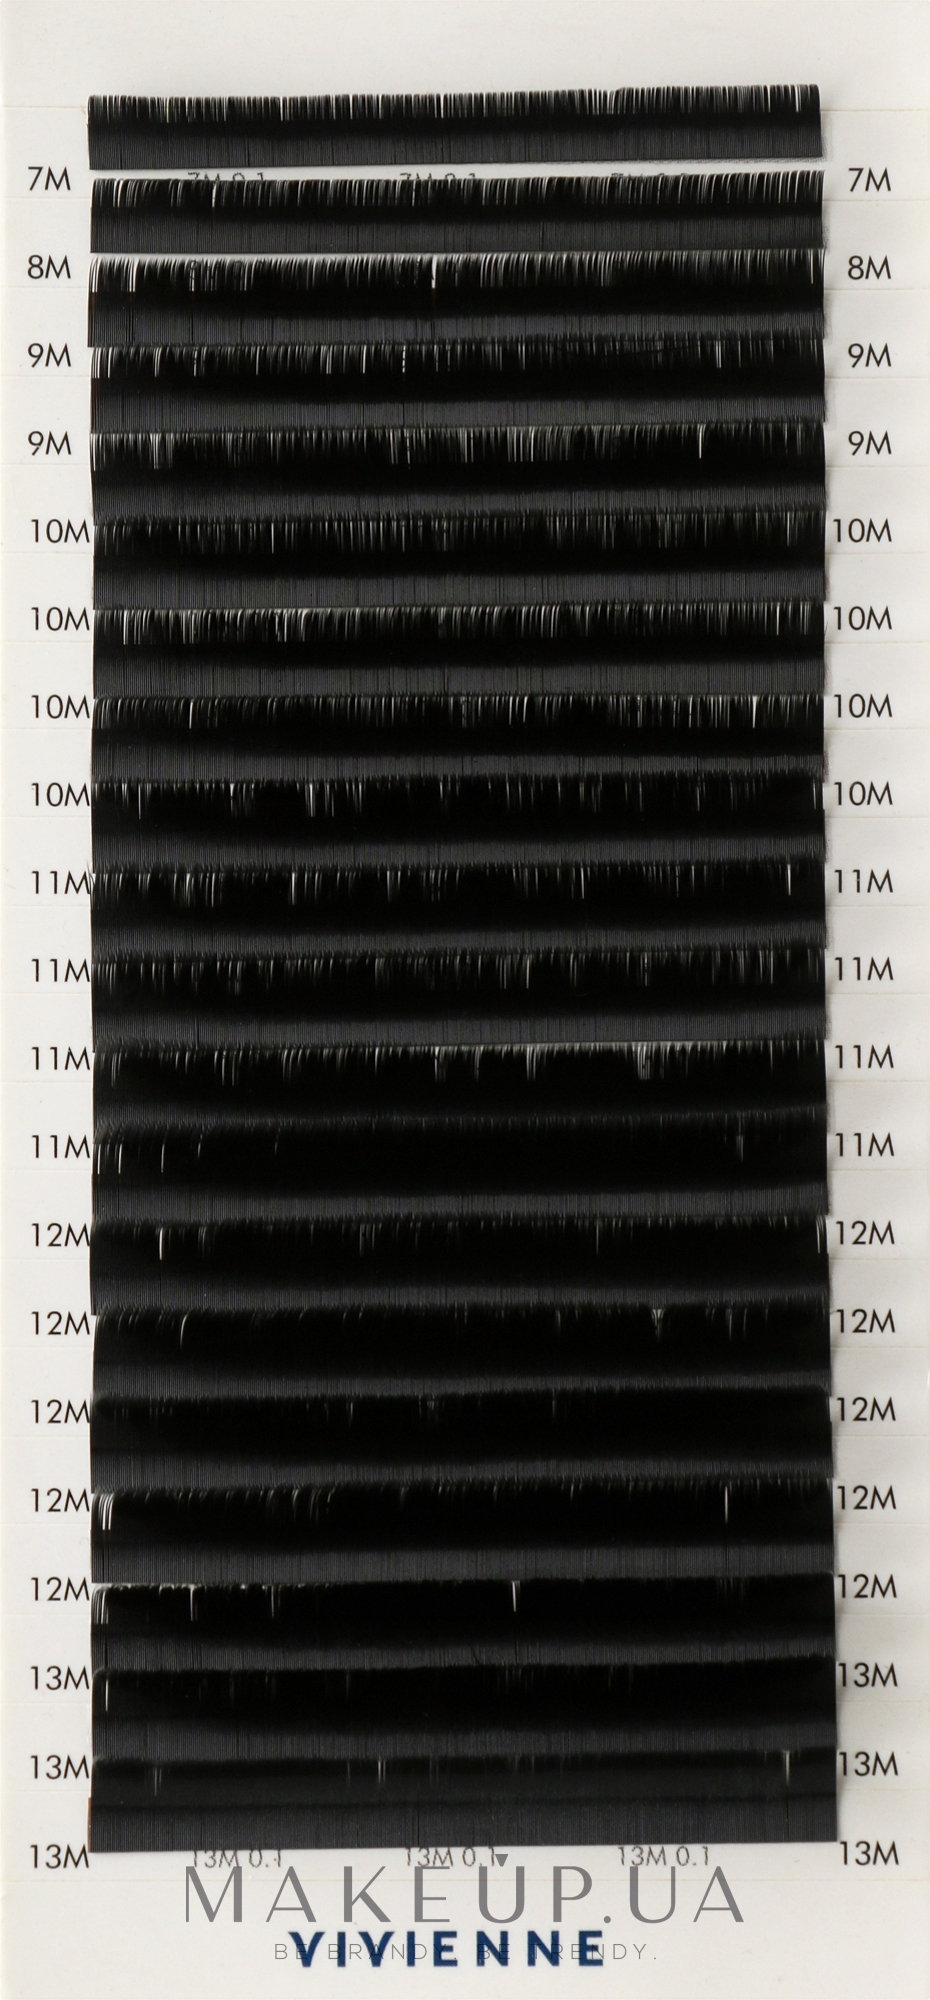 Накладные ресницы "Elite", черные, 20 линий (mix, 0,1, M, (7-13)), эко упаковка - Vivienne — фото 1уп